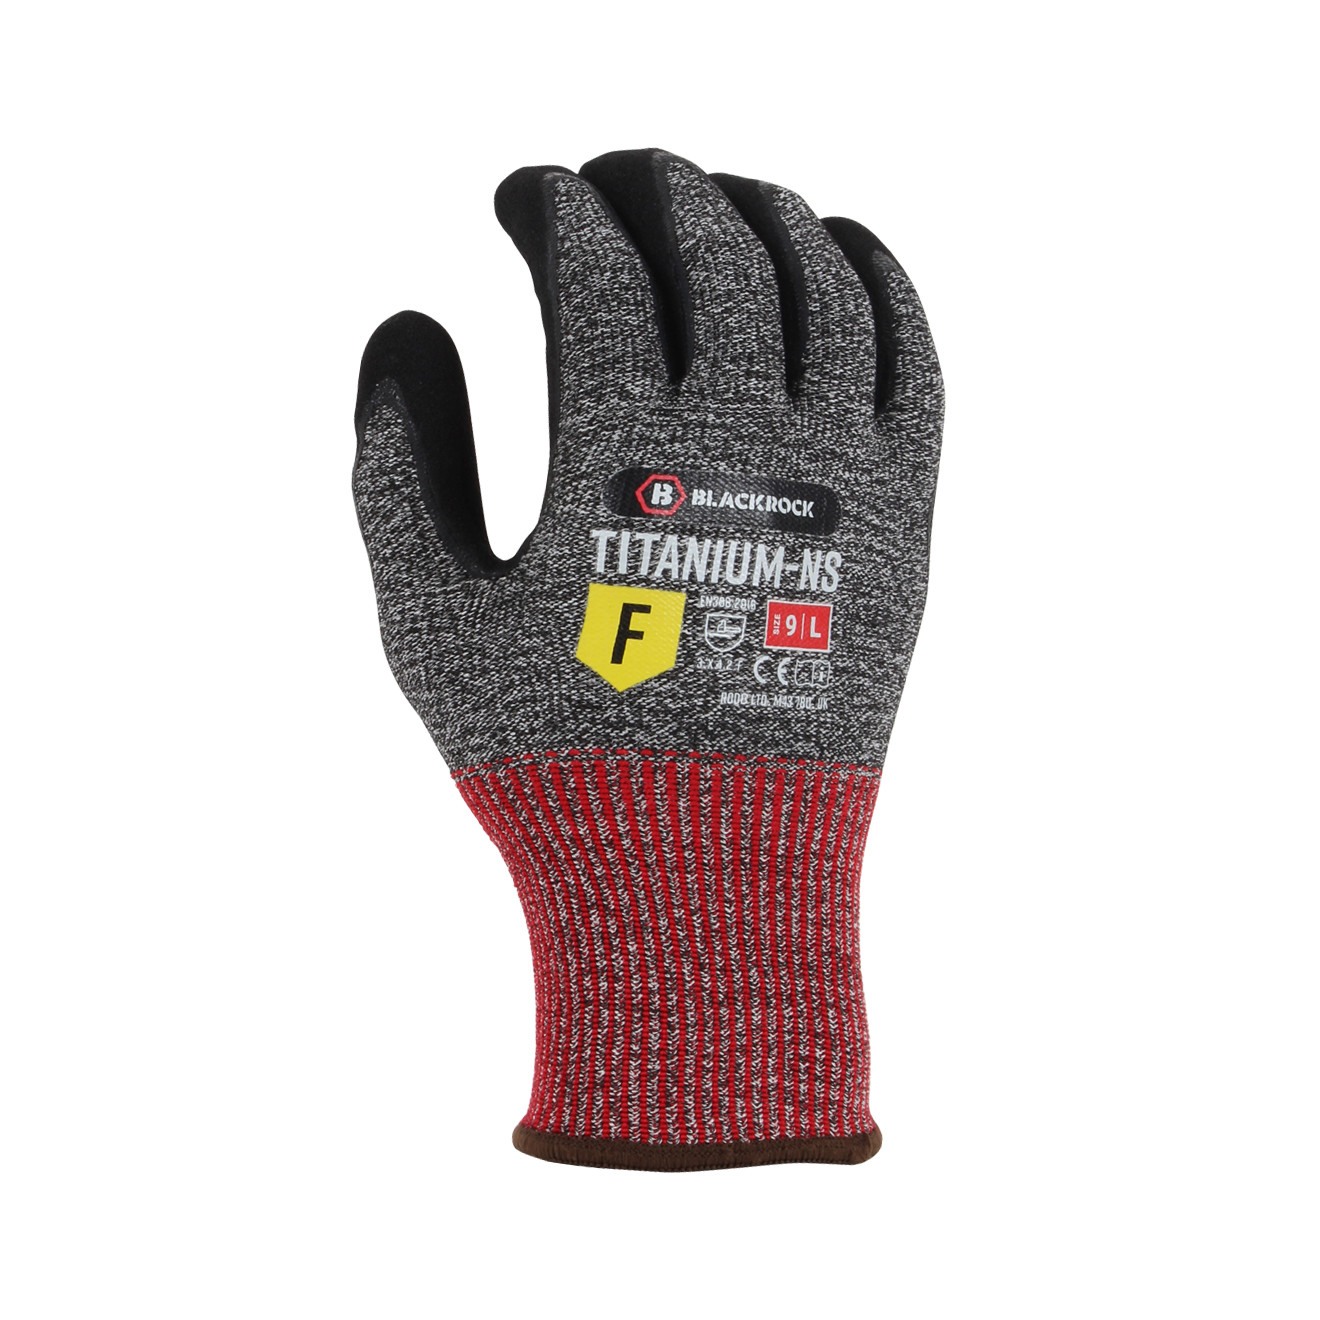 Titanium-NS Cut Resistant Glove